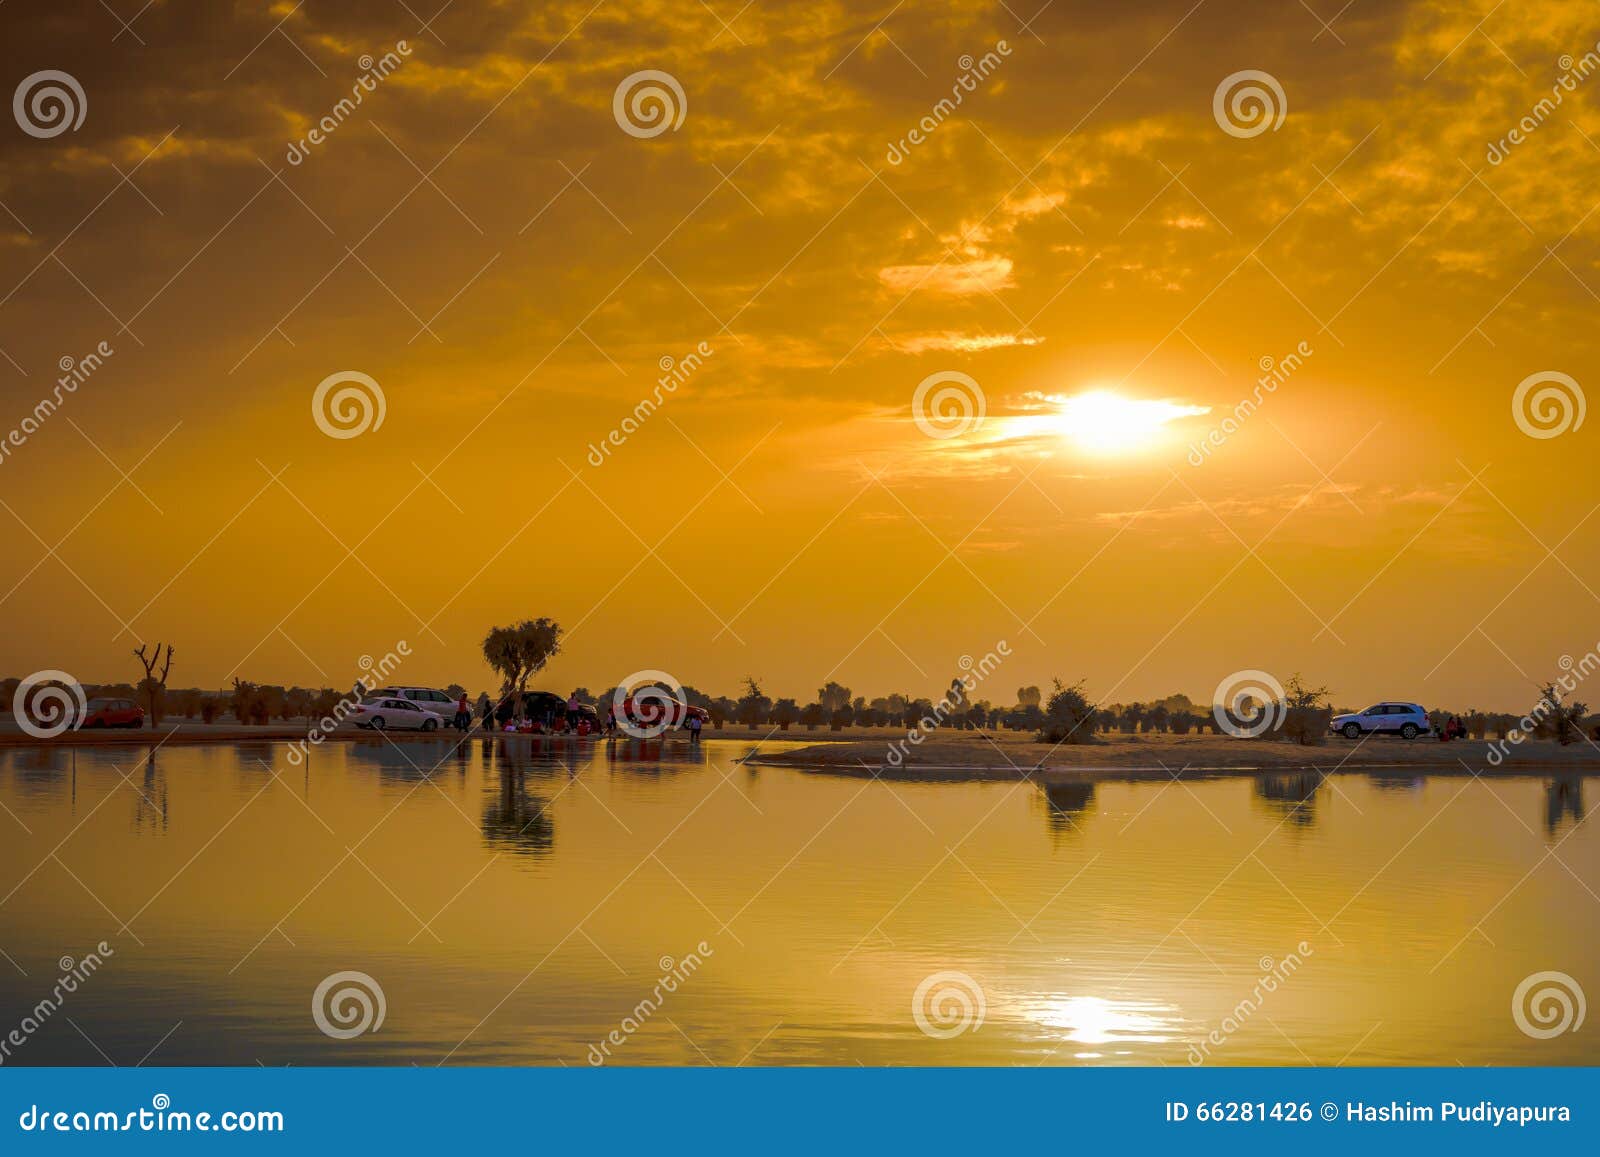 sunset at al qudra lake, dubai